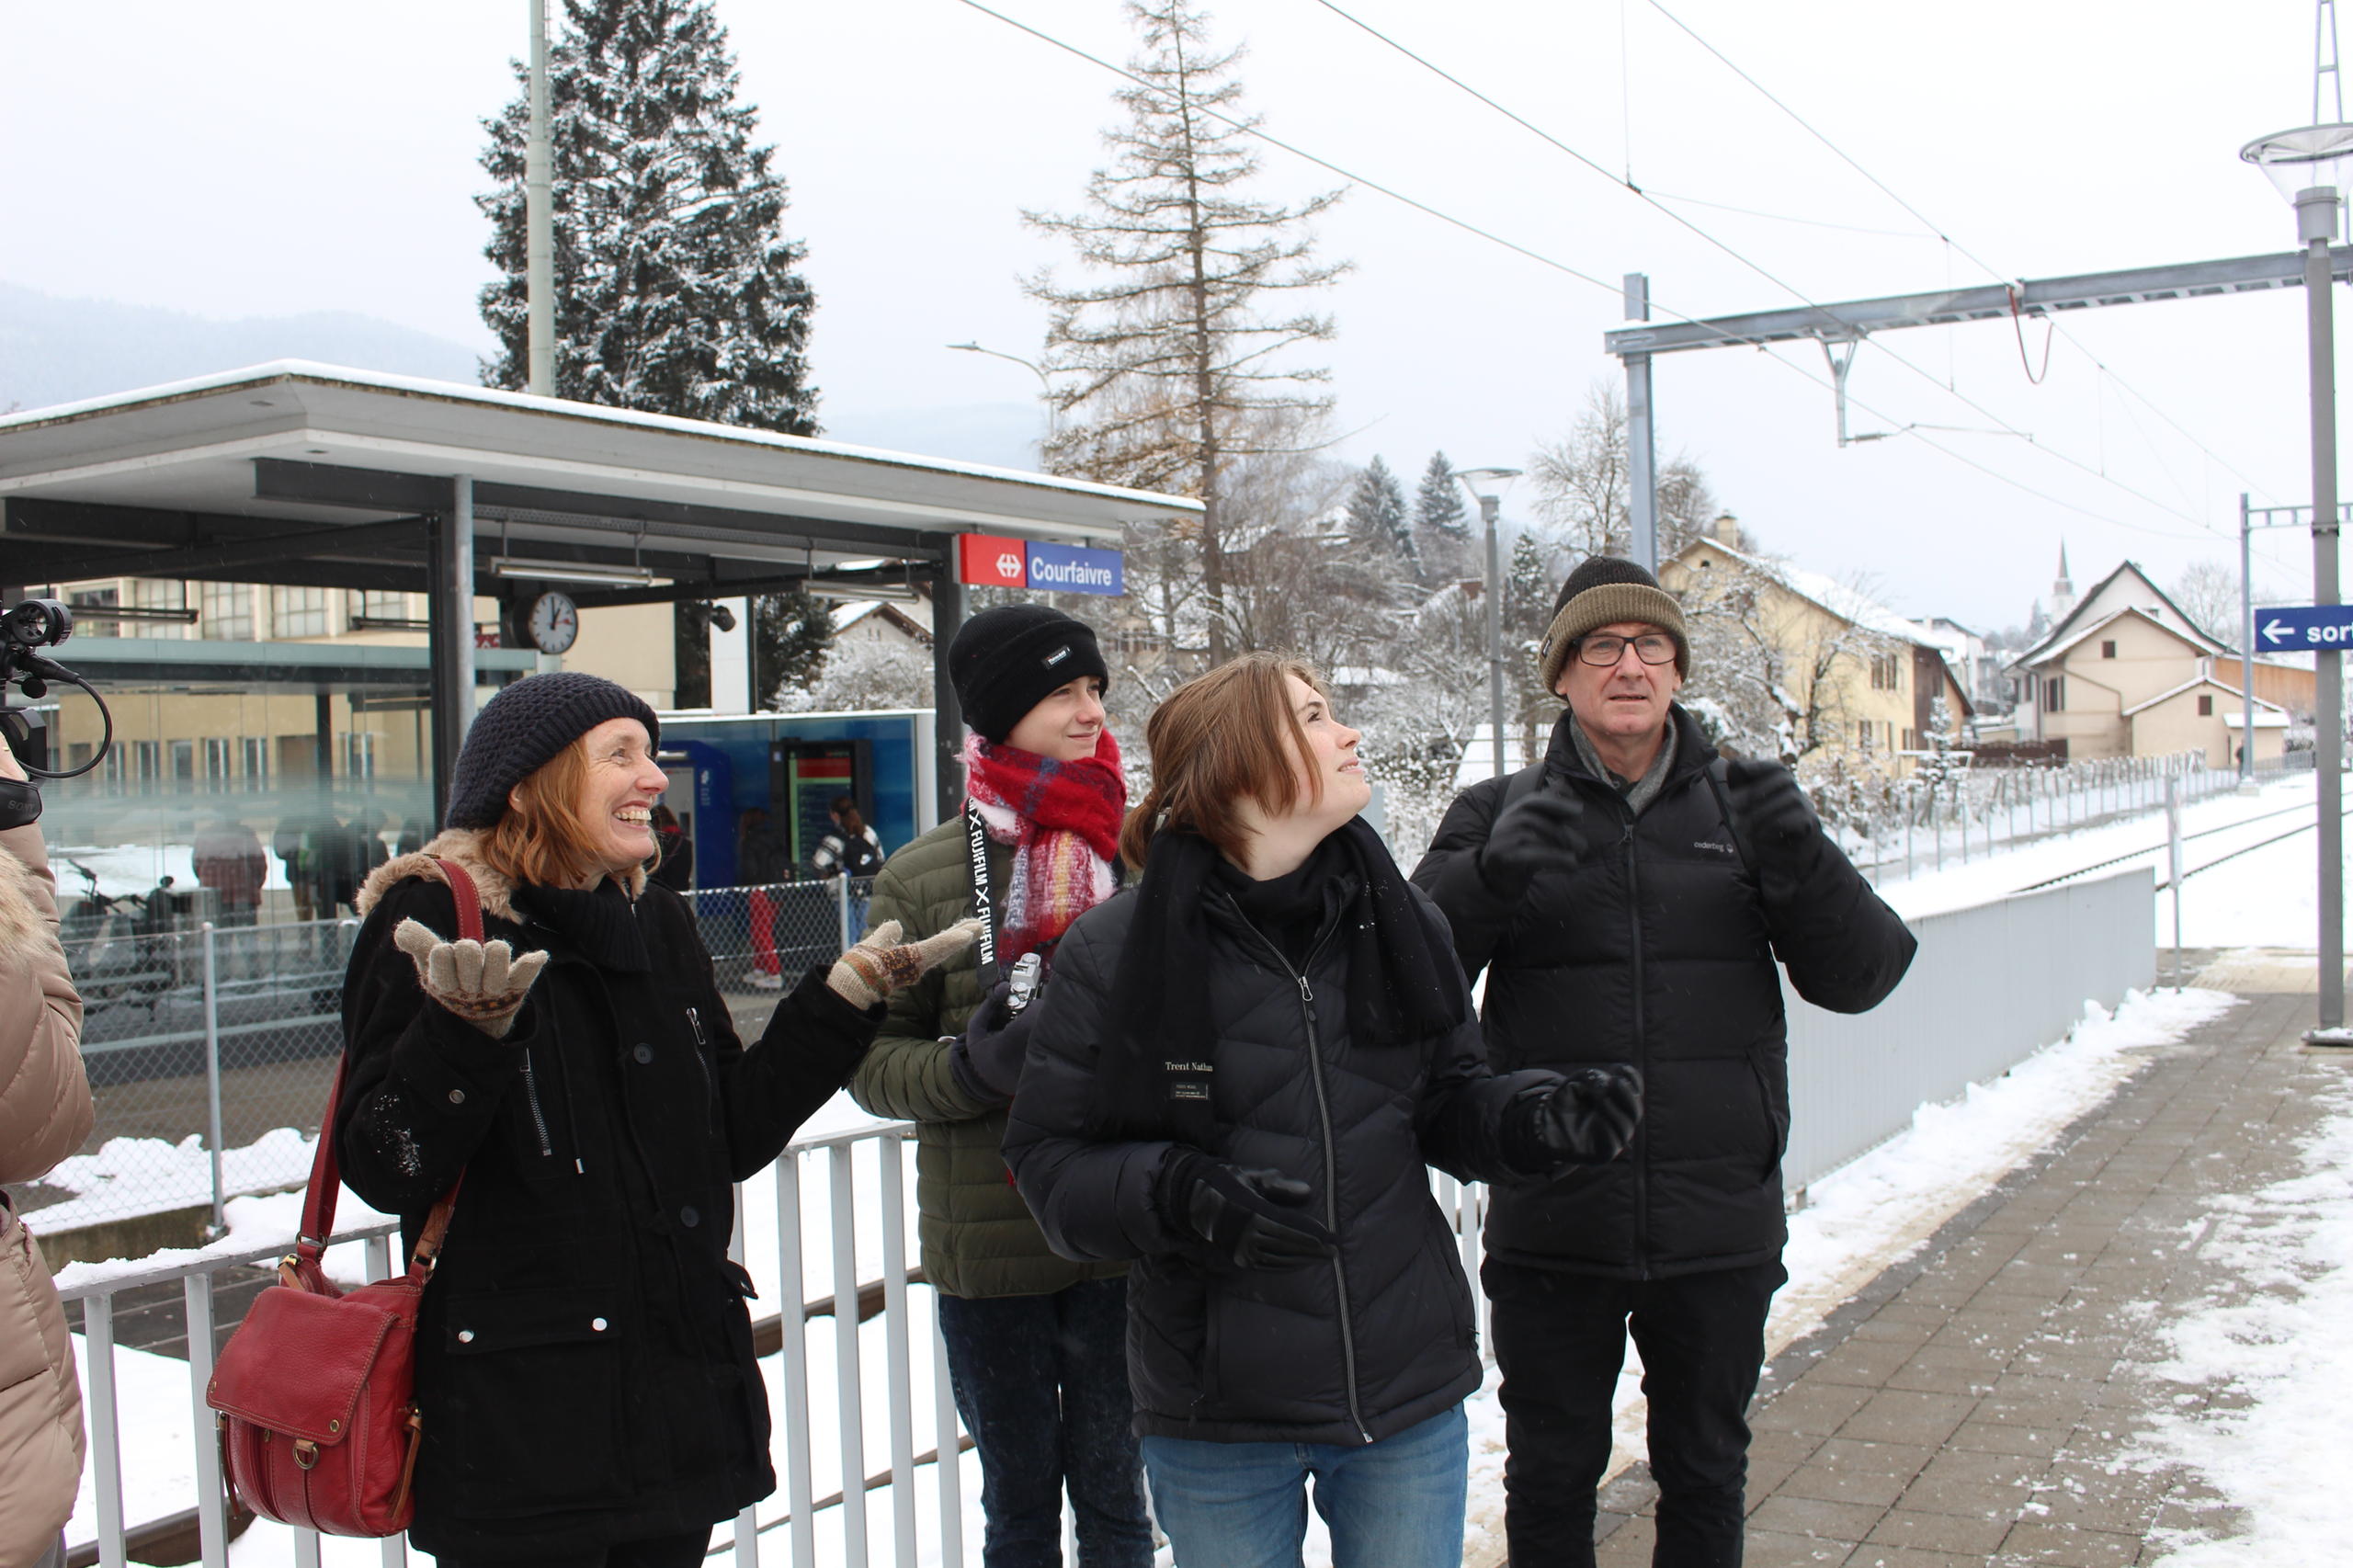 對於丈夫羅布(Rob)和兩個孩子金妮(Ginny)、奧斯卡(Oscar)來說這是第一次歐洲之外的旅行，他們很開心能看到雪。